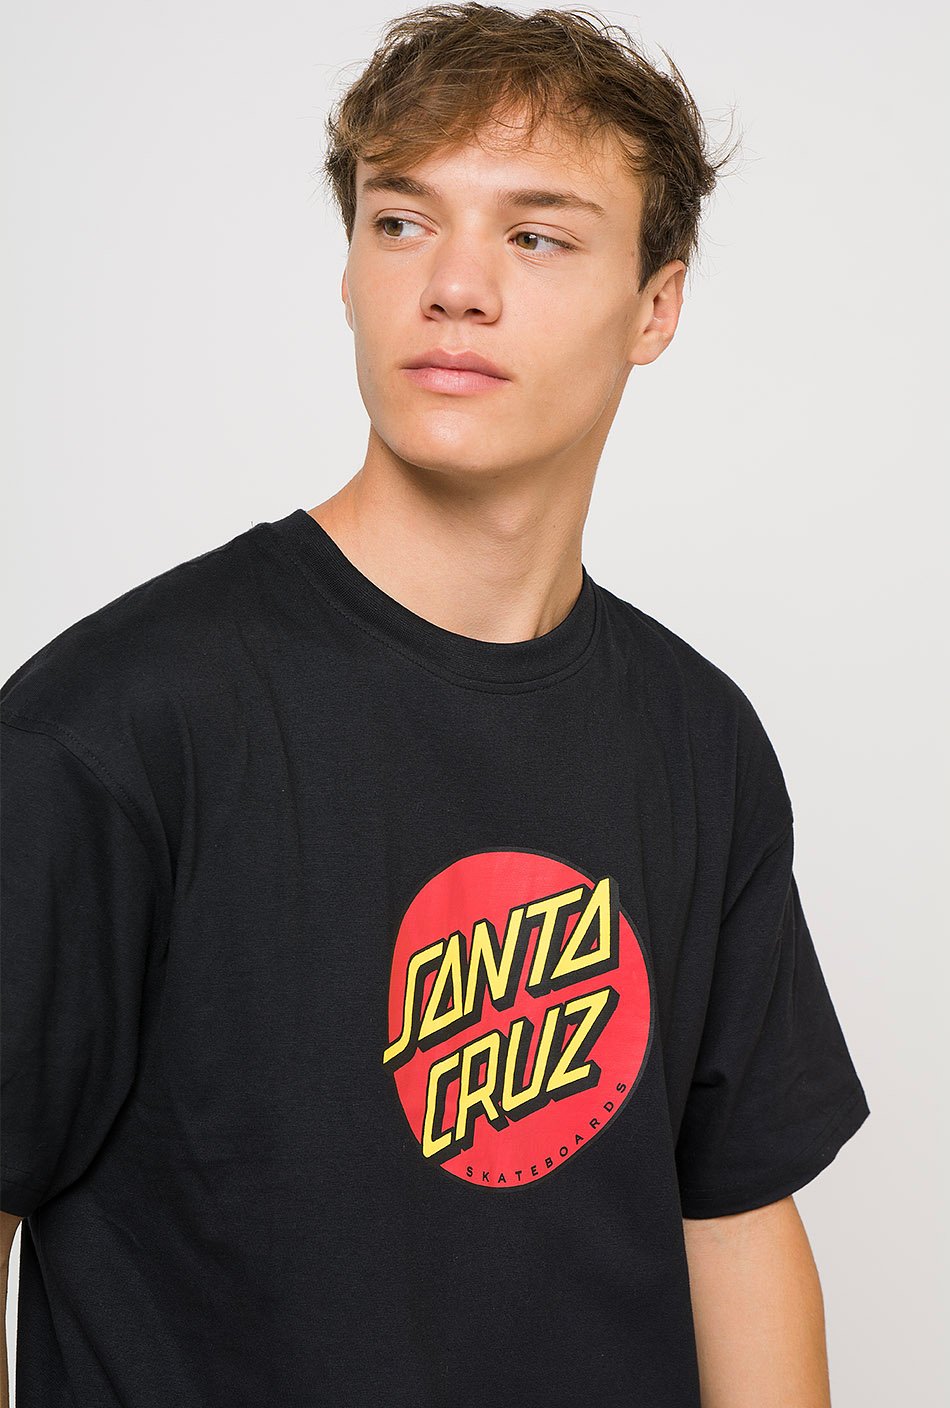 Camiseta Santa Cruz Dot Black